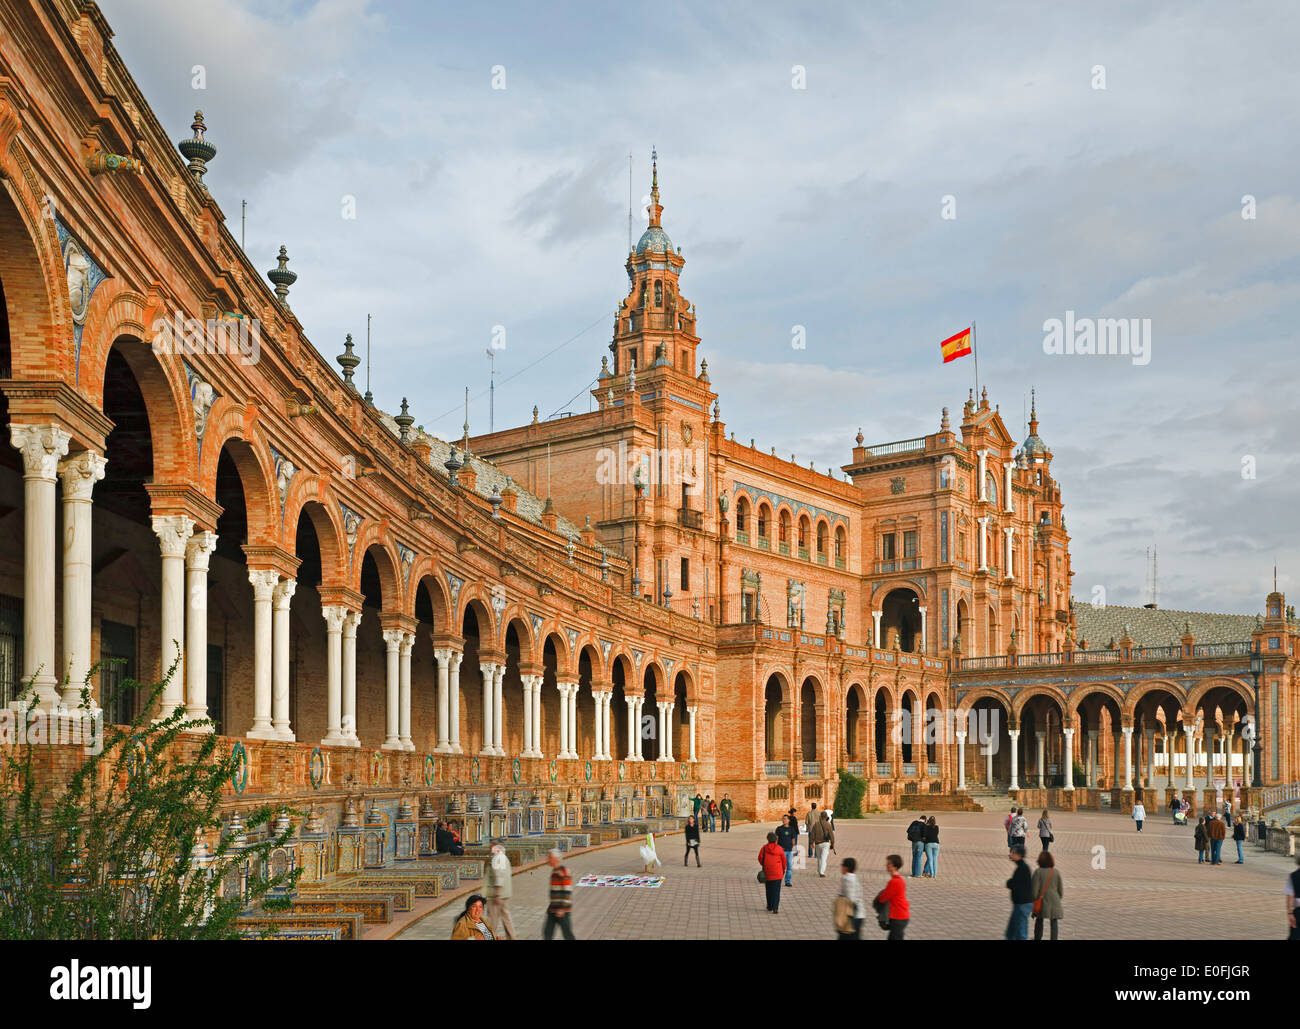 Plaza de España, Seville, Spain Stock Photo